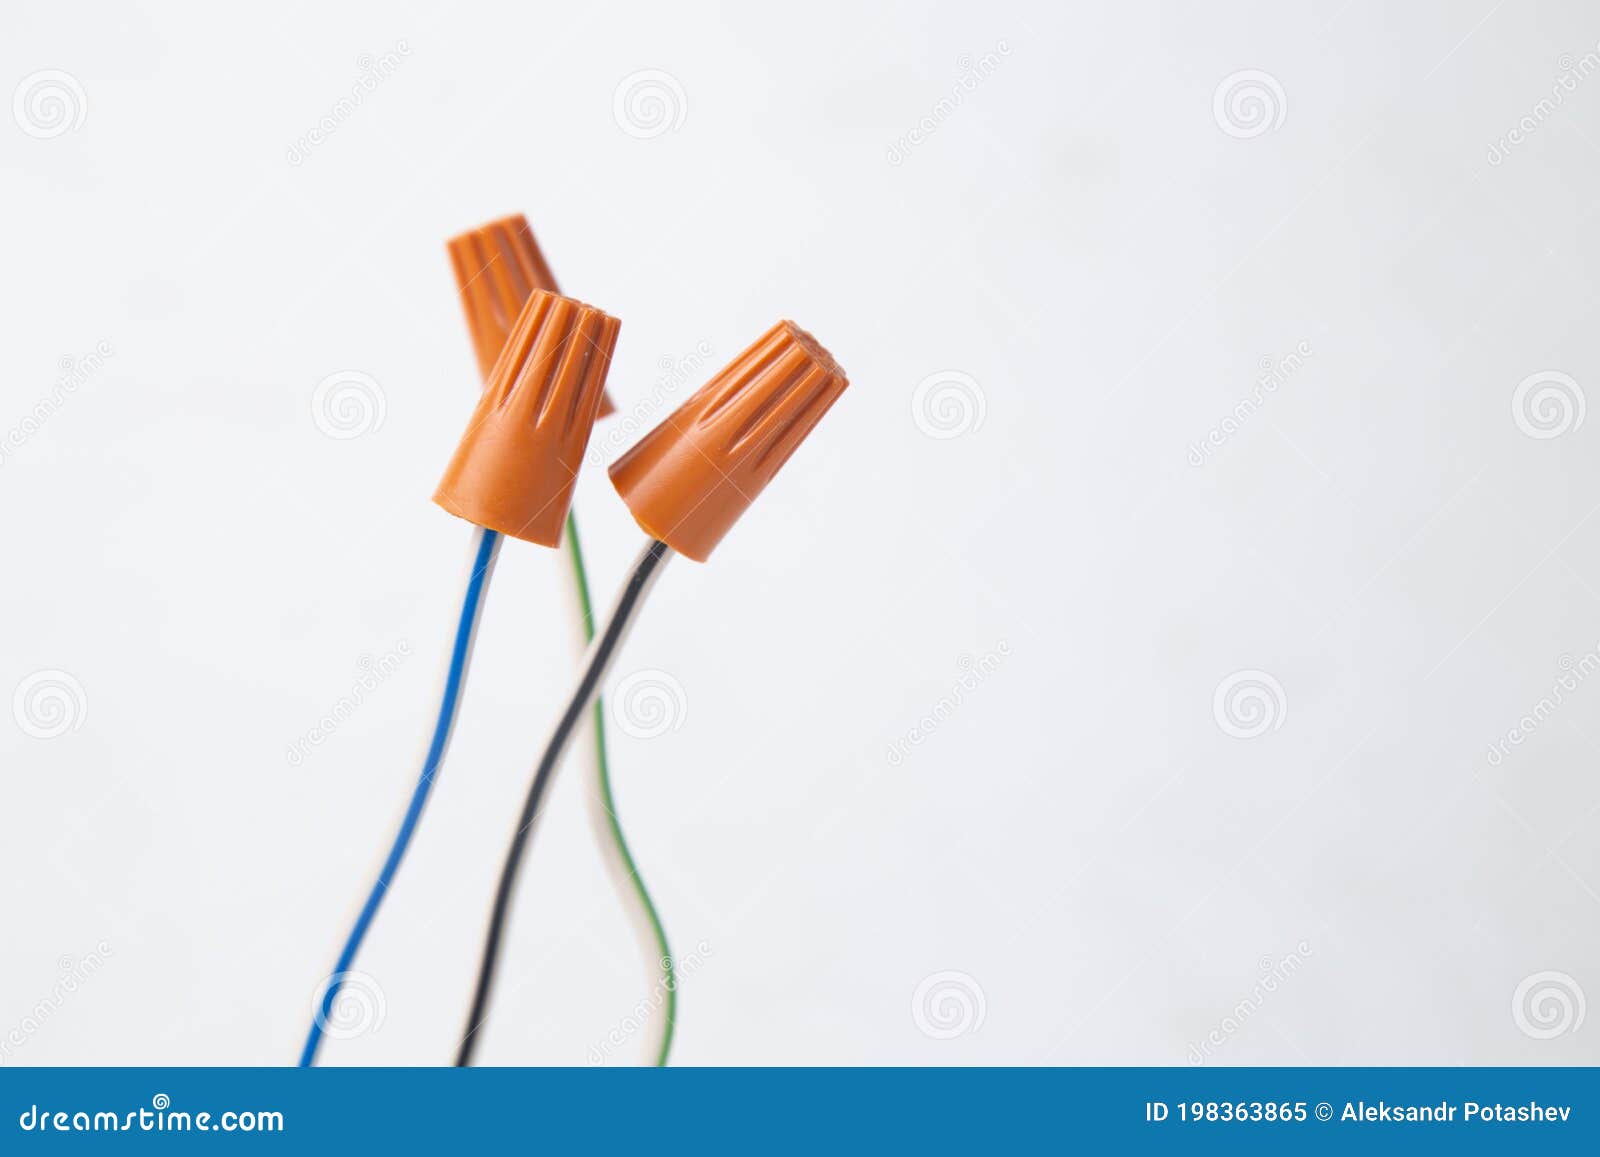 Conectores Para Conectar Cables Eléctricos. Equipos Eléctricos Y